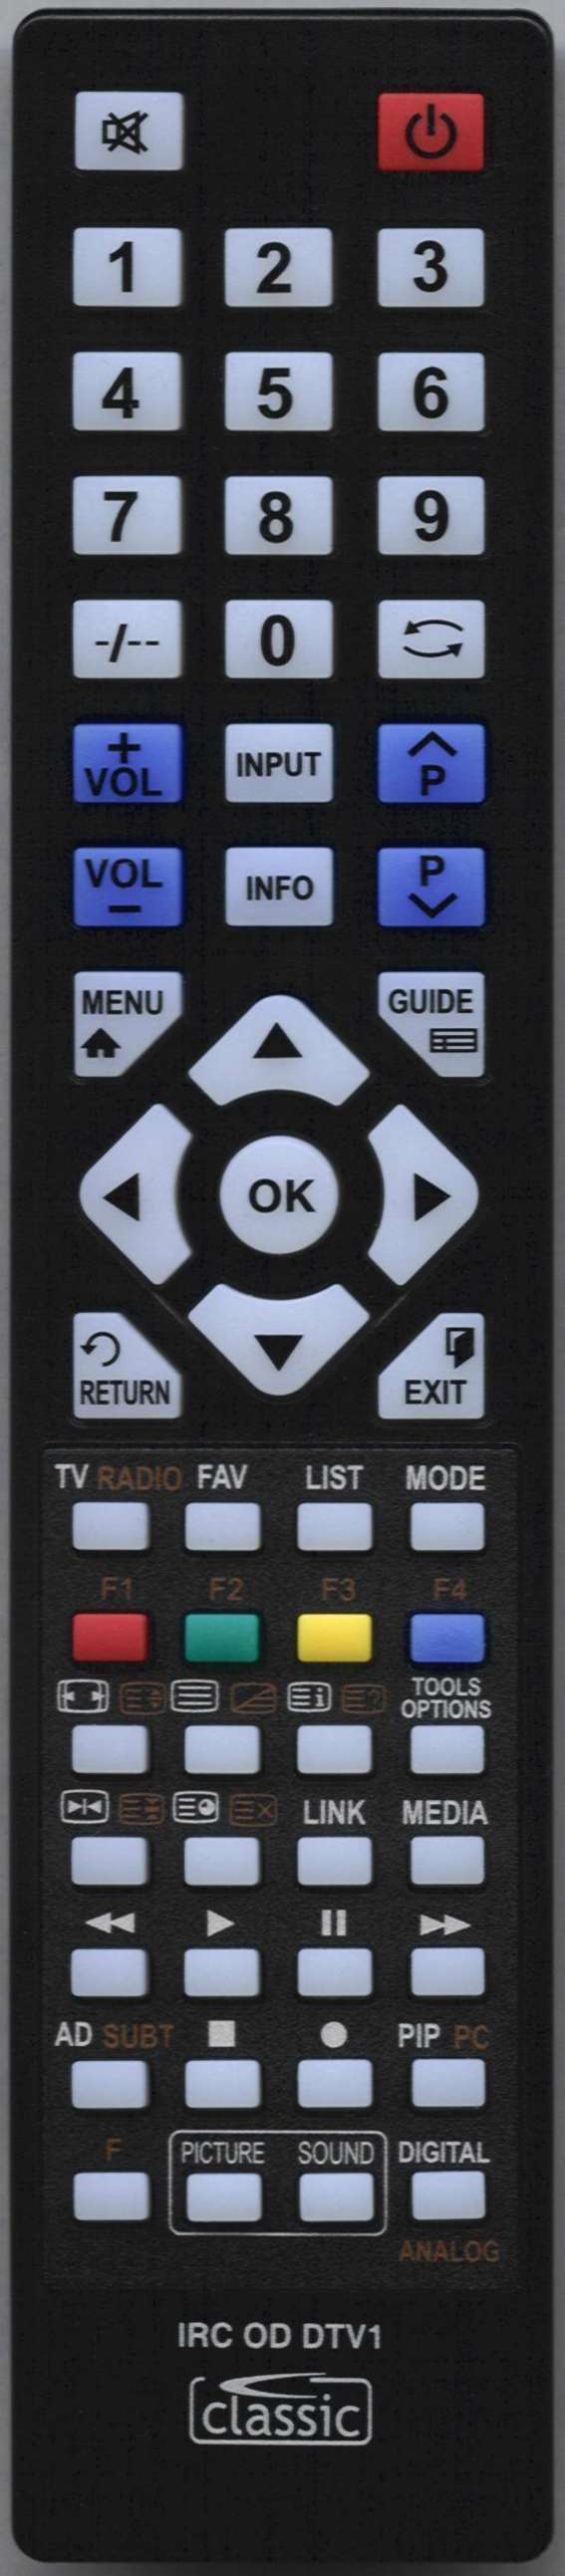 ORION TV40FX6900 Remote Control